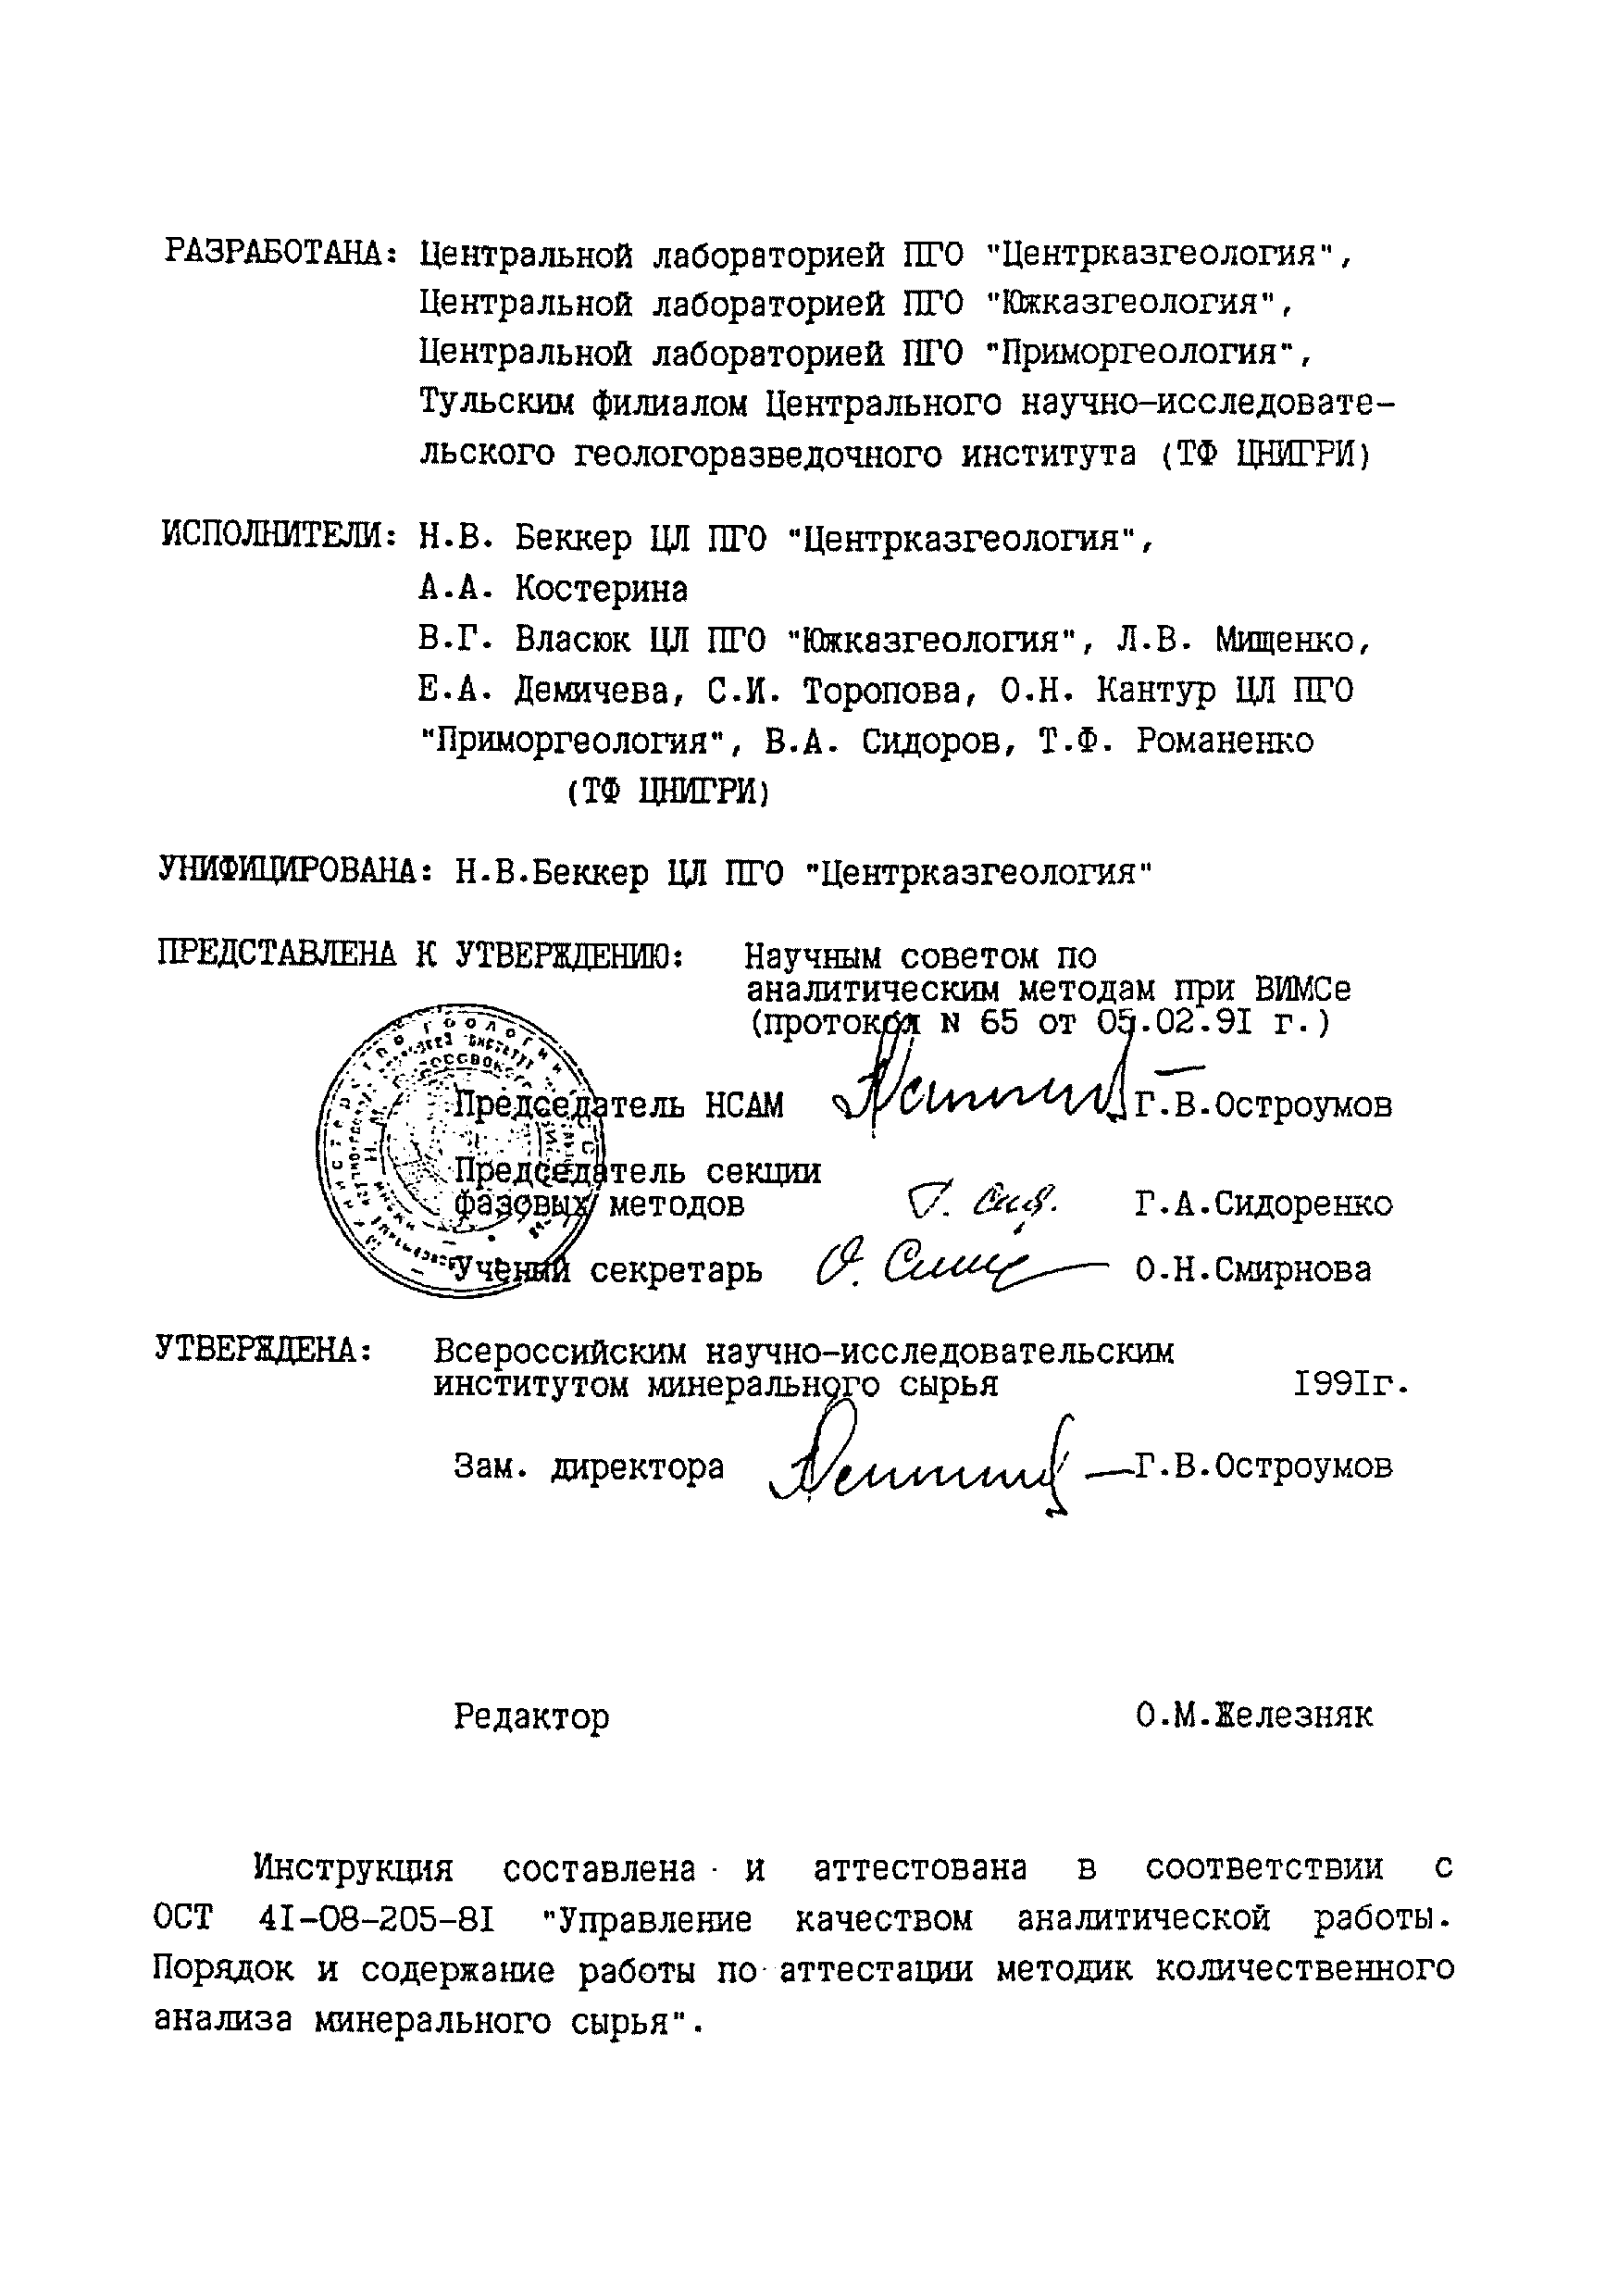 Инструкция НСАМ 345-Ф